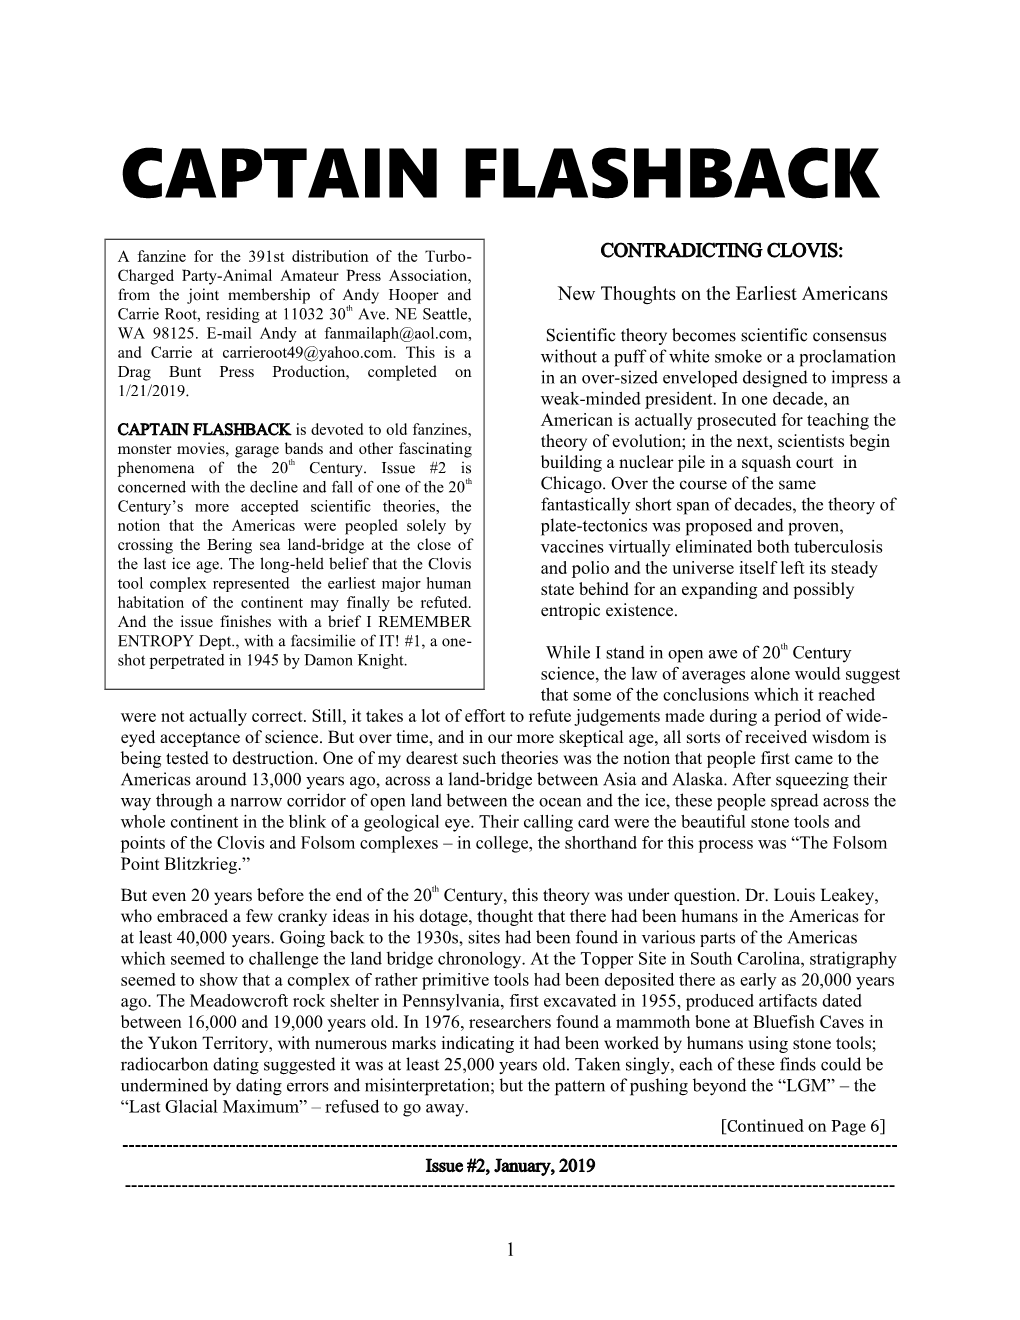 Captain Flashback #2